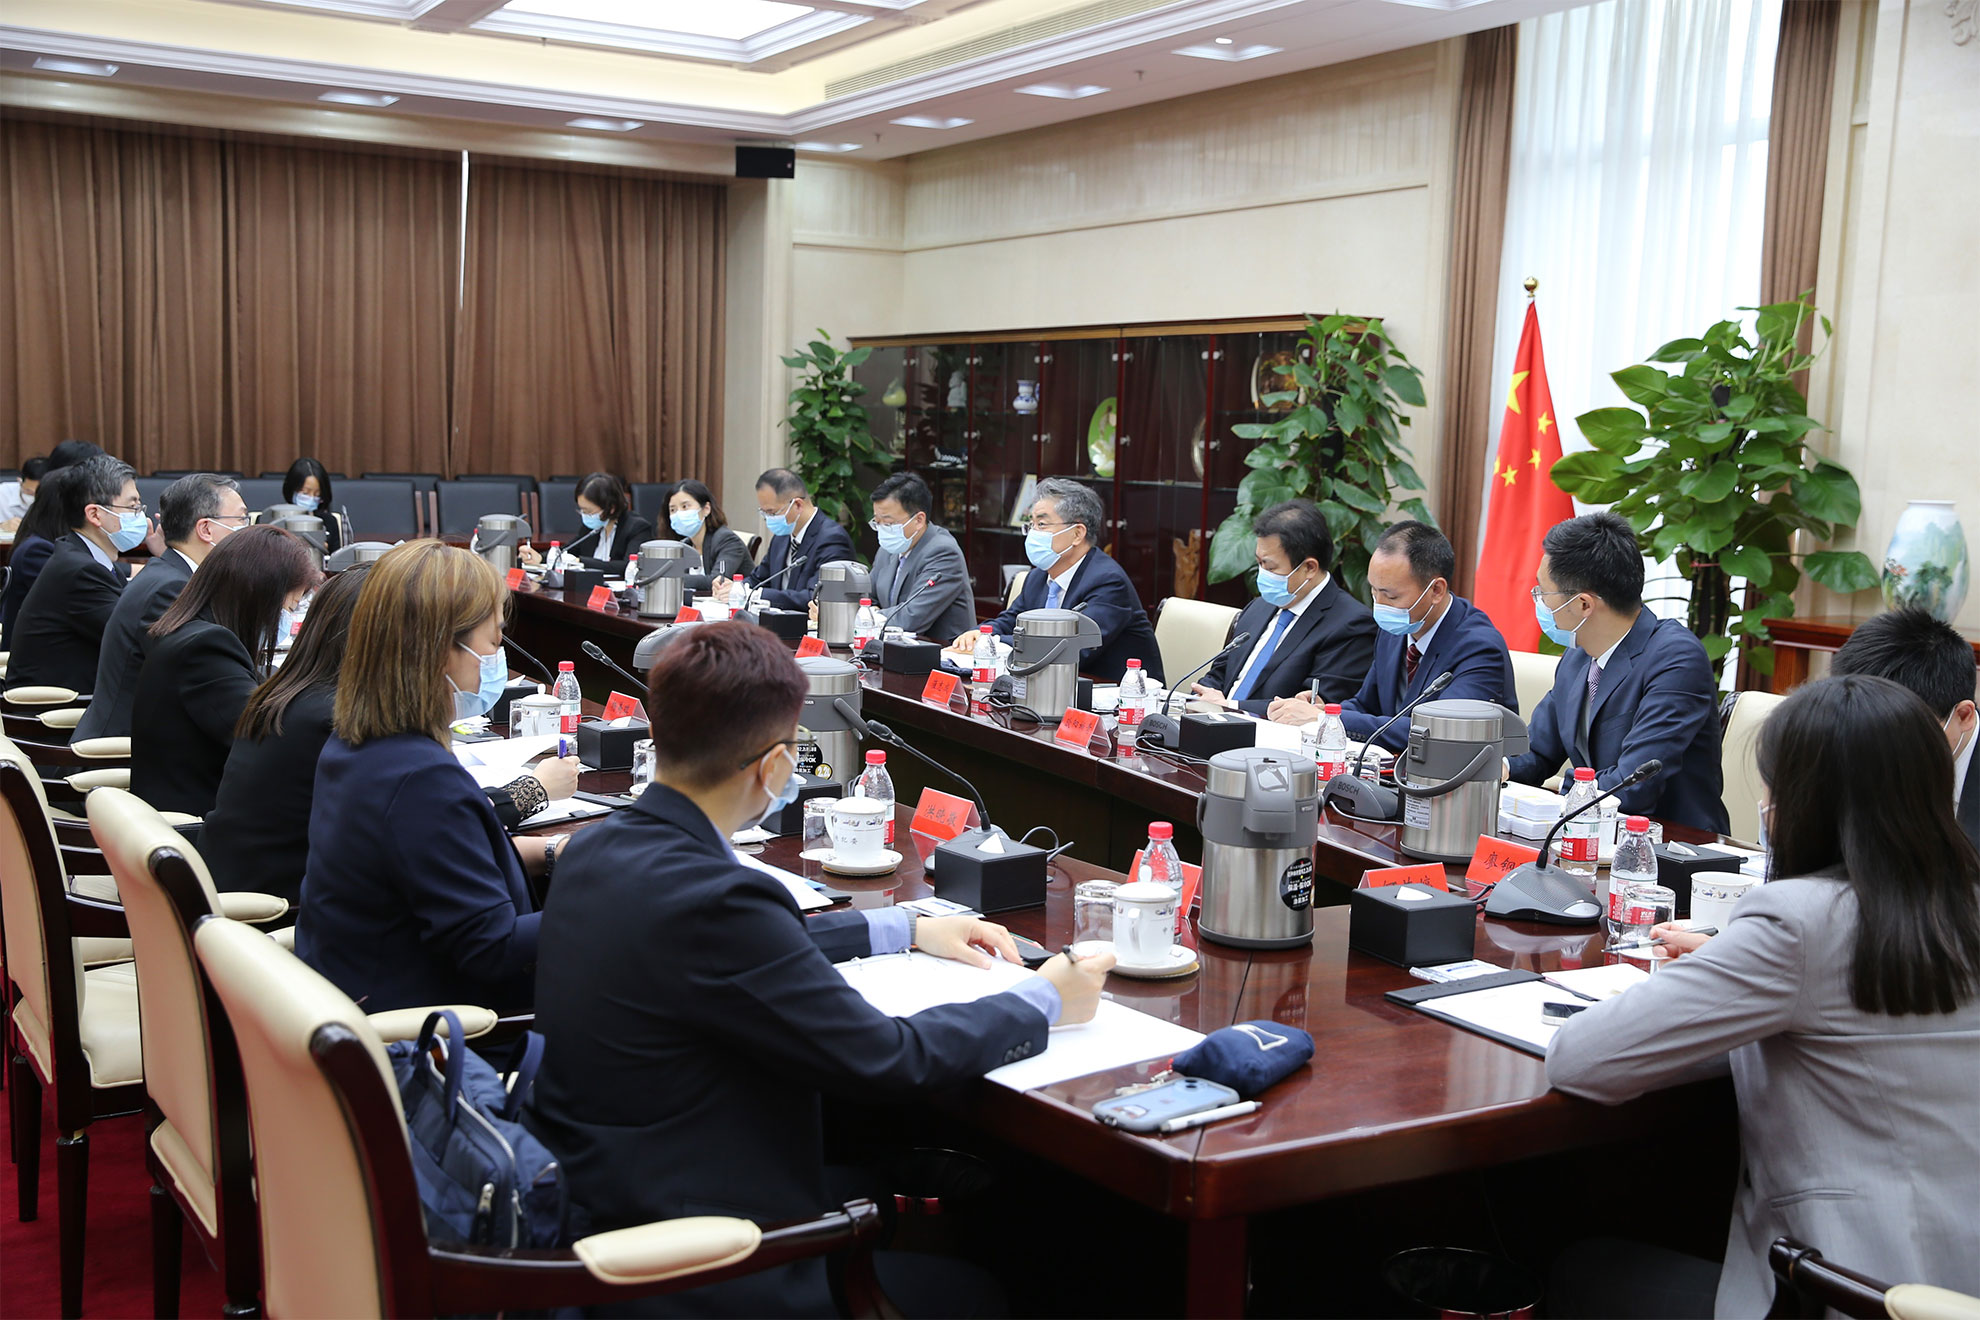 律政司司长林定国资深大律师五月二十九日下午在北京与国家监察委员会副主任张福海会面。图示双方进行会议。